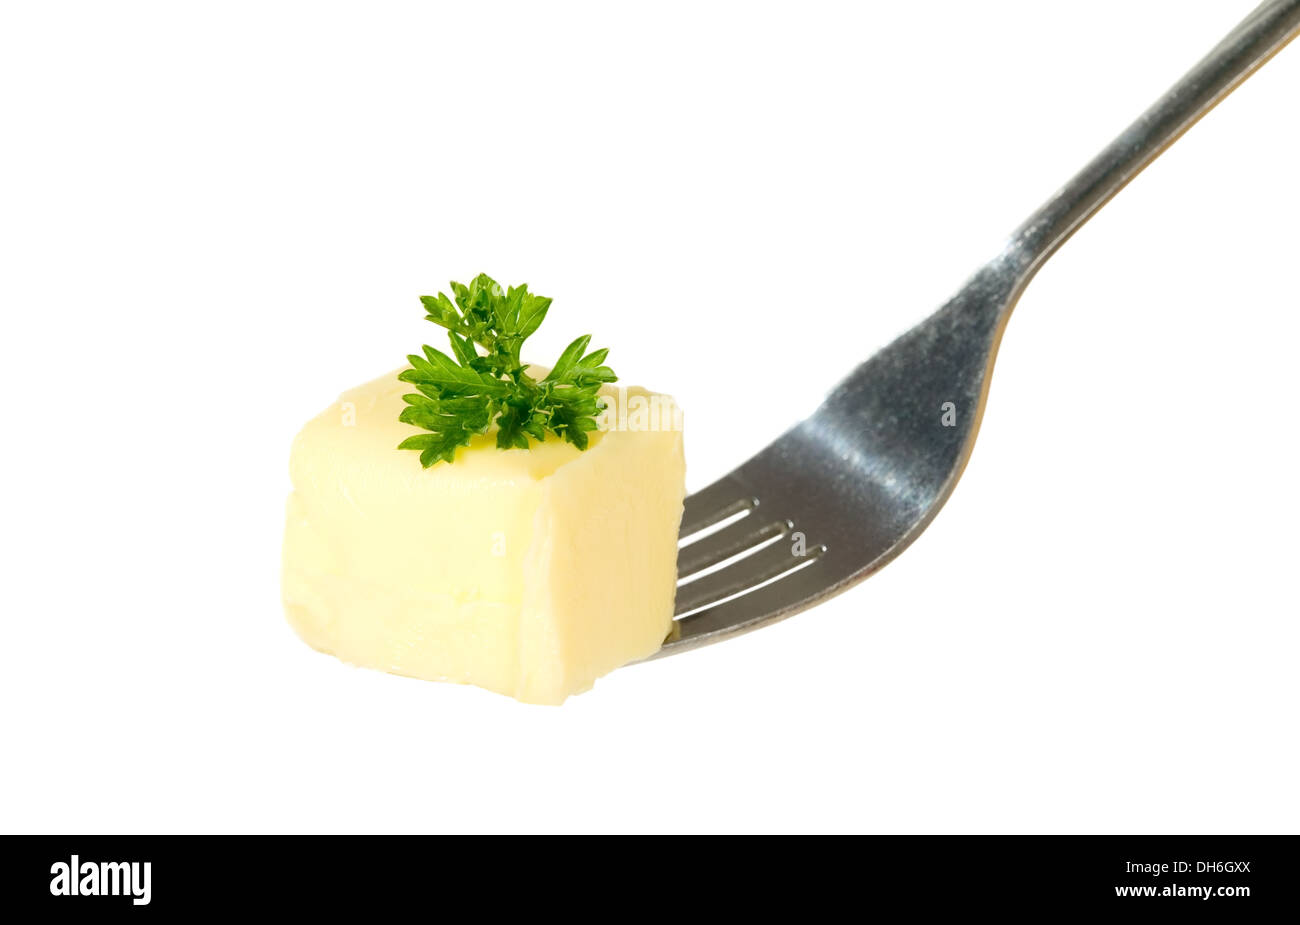 Le beurre de persil jaune est en cours d'attente avec la fourchette, food concept Banque D'Images